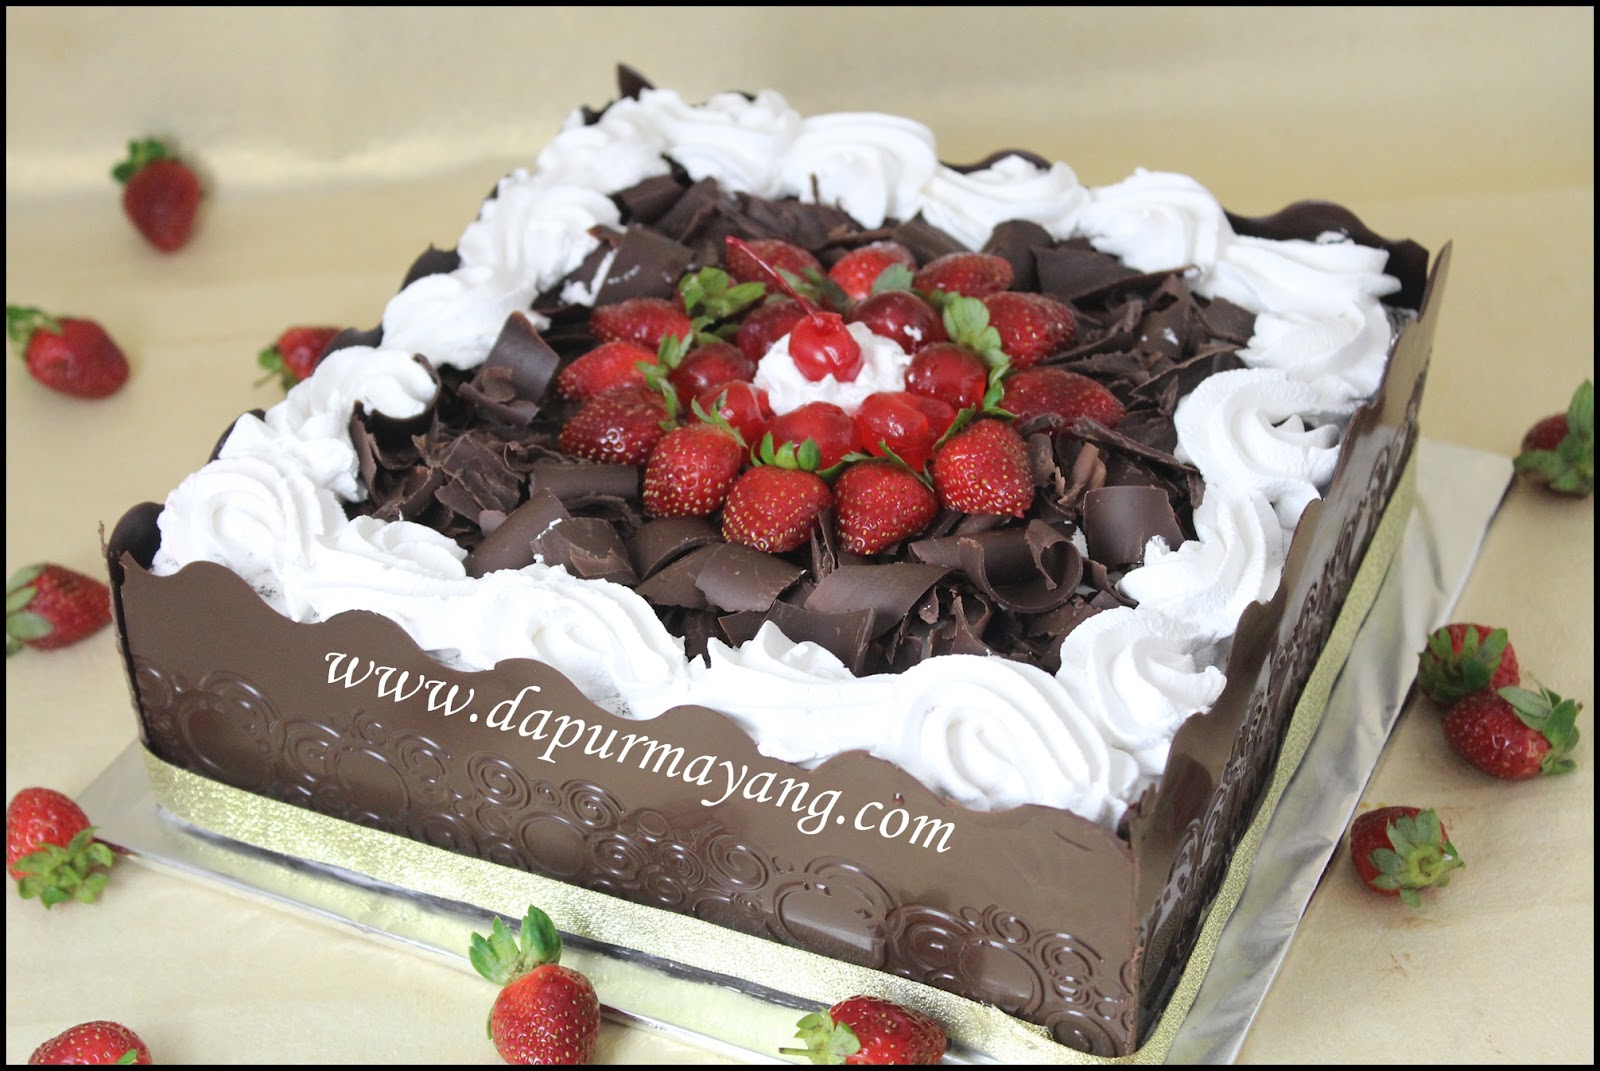 Order Kue Online Adiel Cakes By Dapur Mayang Daftar Harga Cake Di